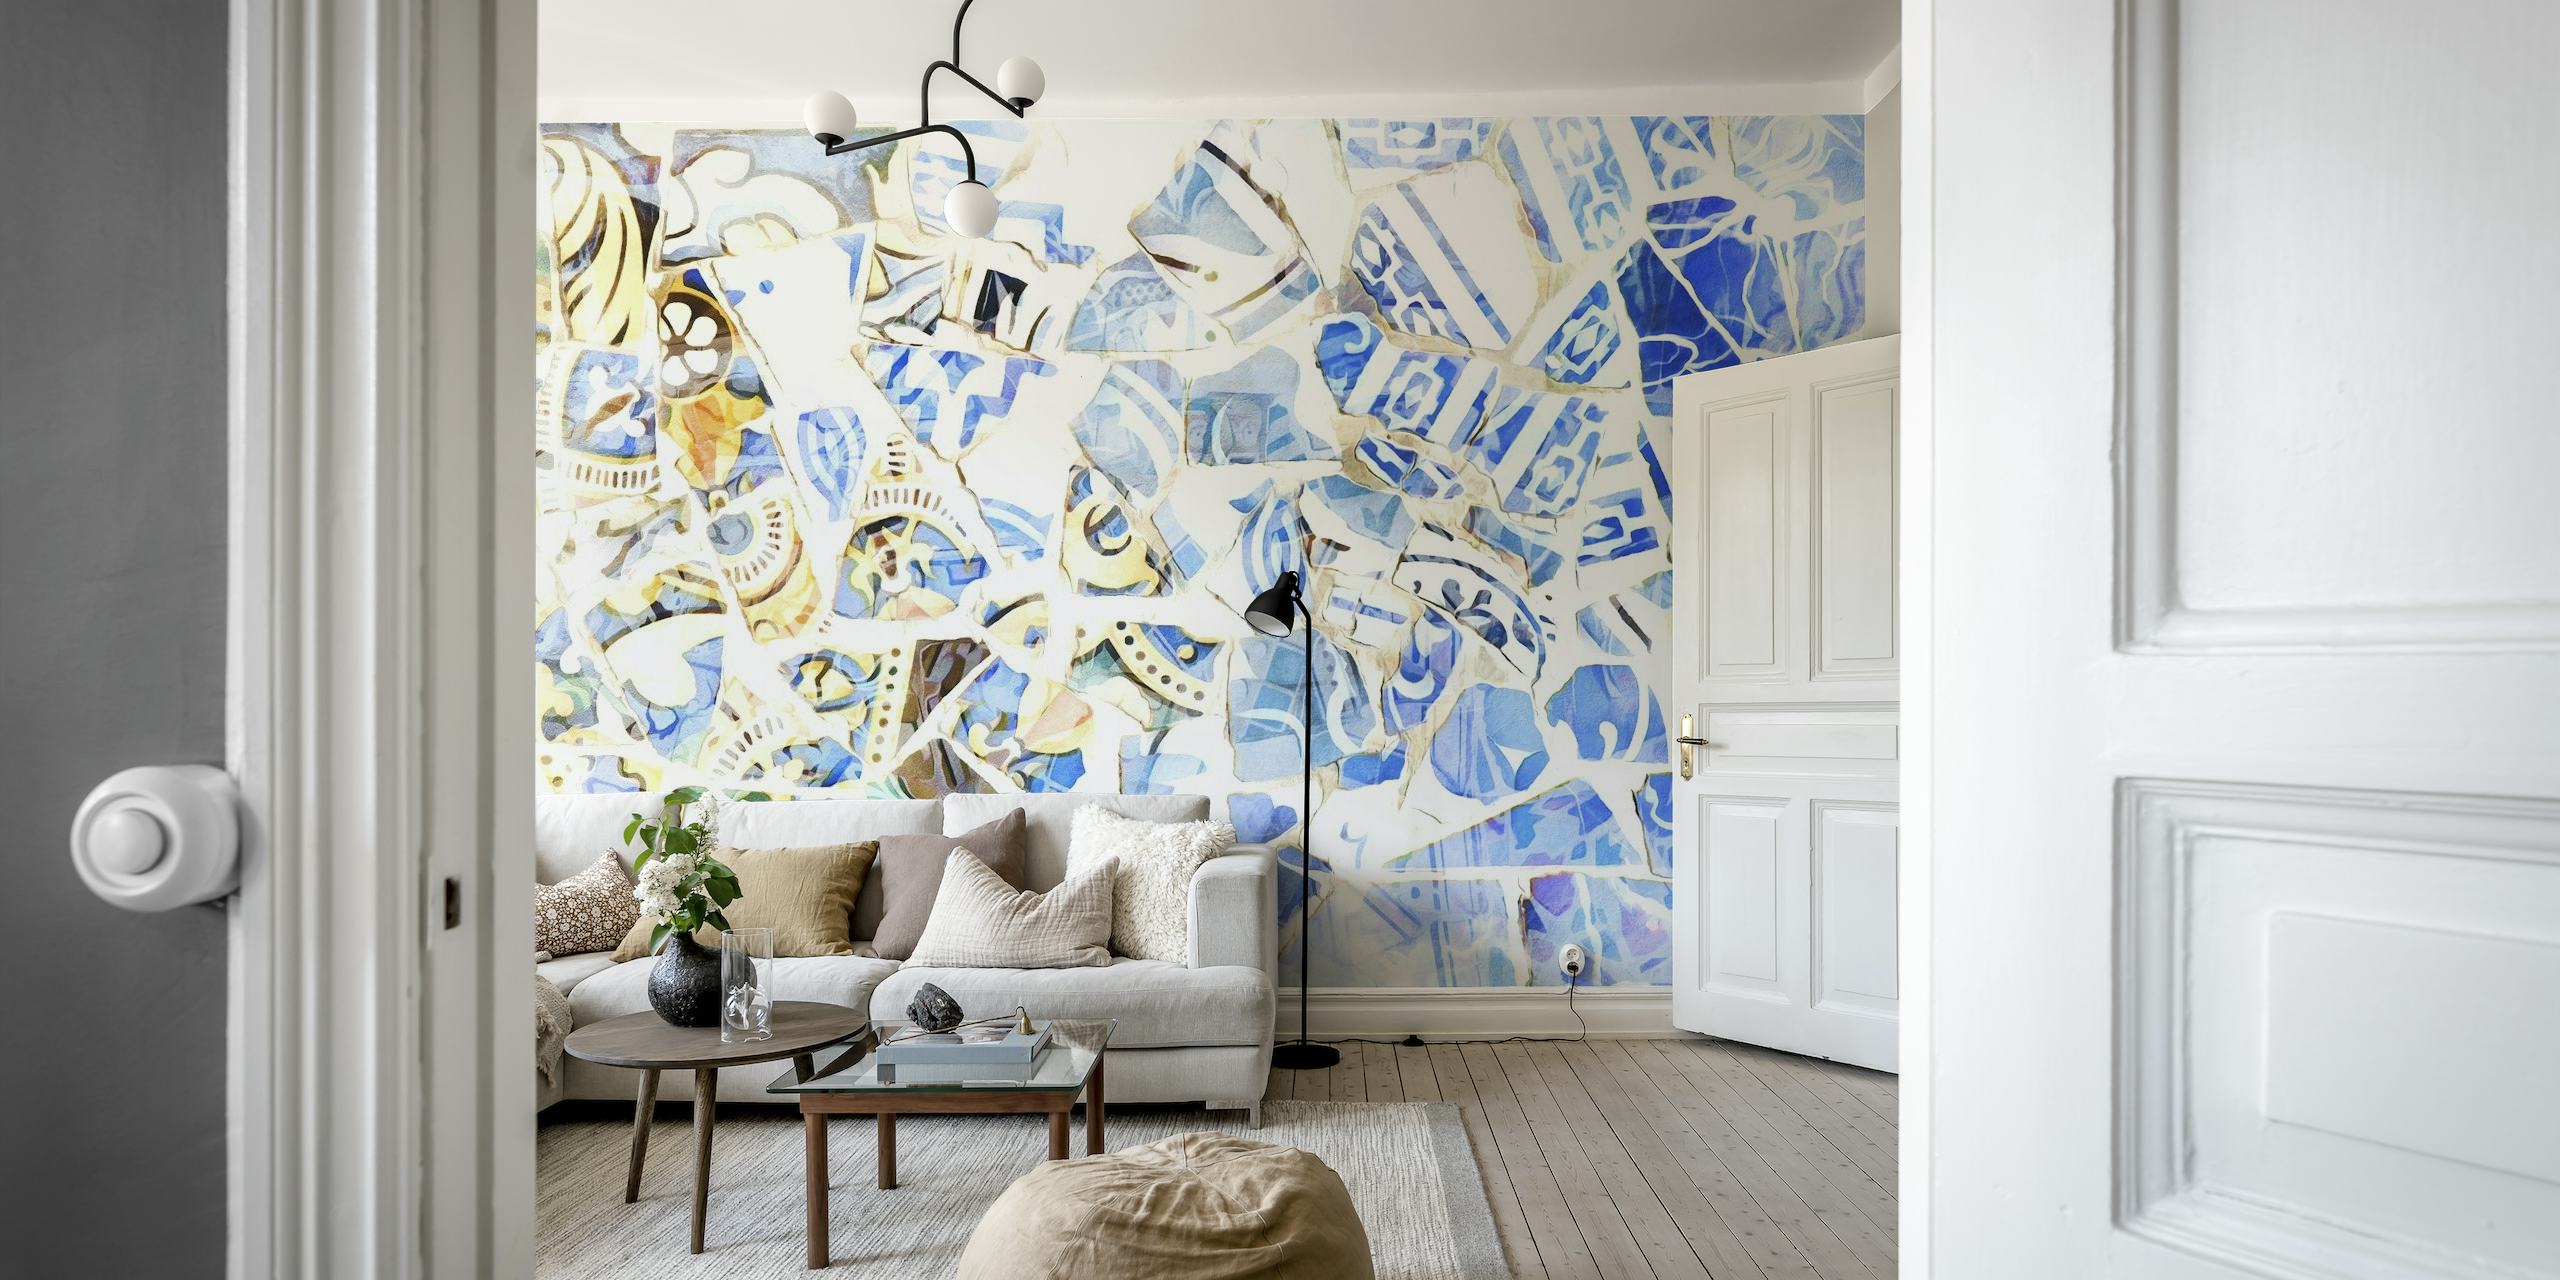 Abstrakt mosaikvægmaleri i blå og hvide nuancer, inspireret af Barcelonas kunst